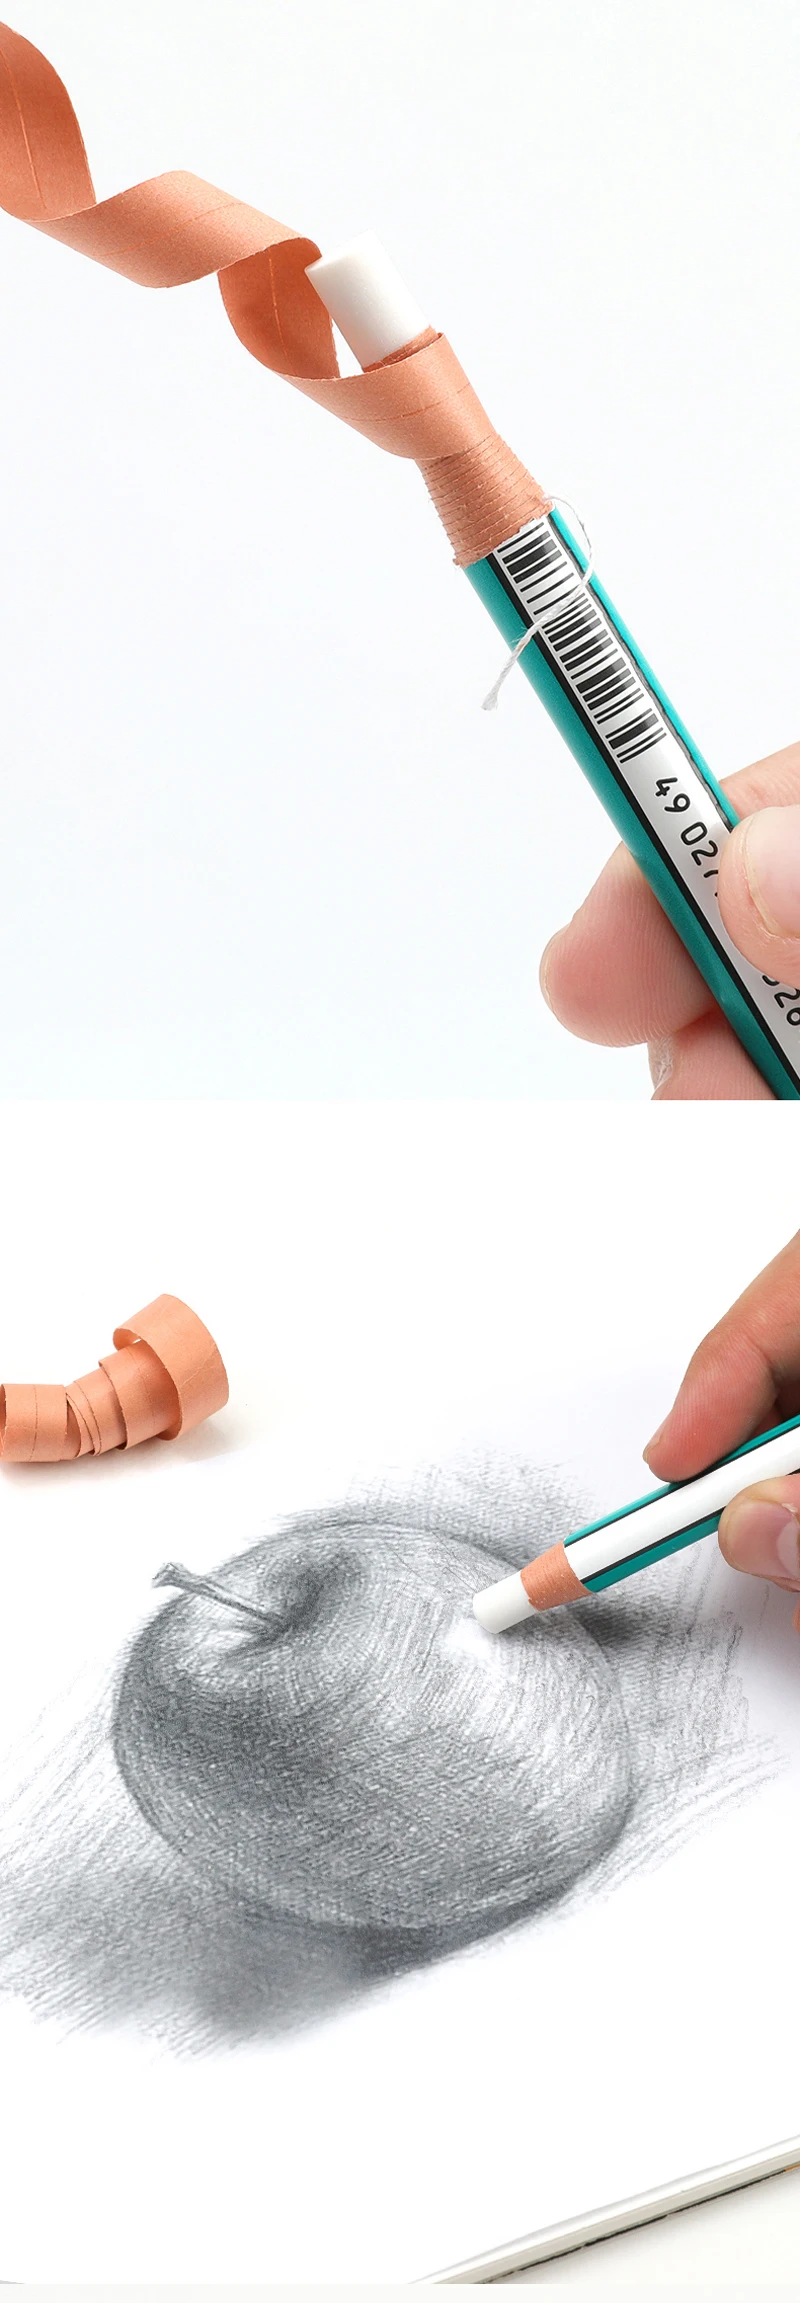 6 штук Япония Uni рулон бумага ластик EK-100/Ручка Тип Резиновая слеза бумага Выделите глянцевый карандаш художественный эскиз